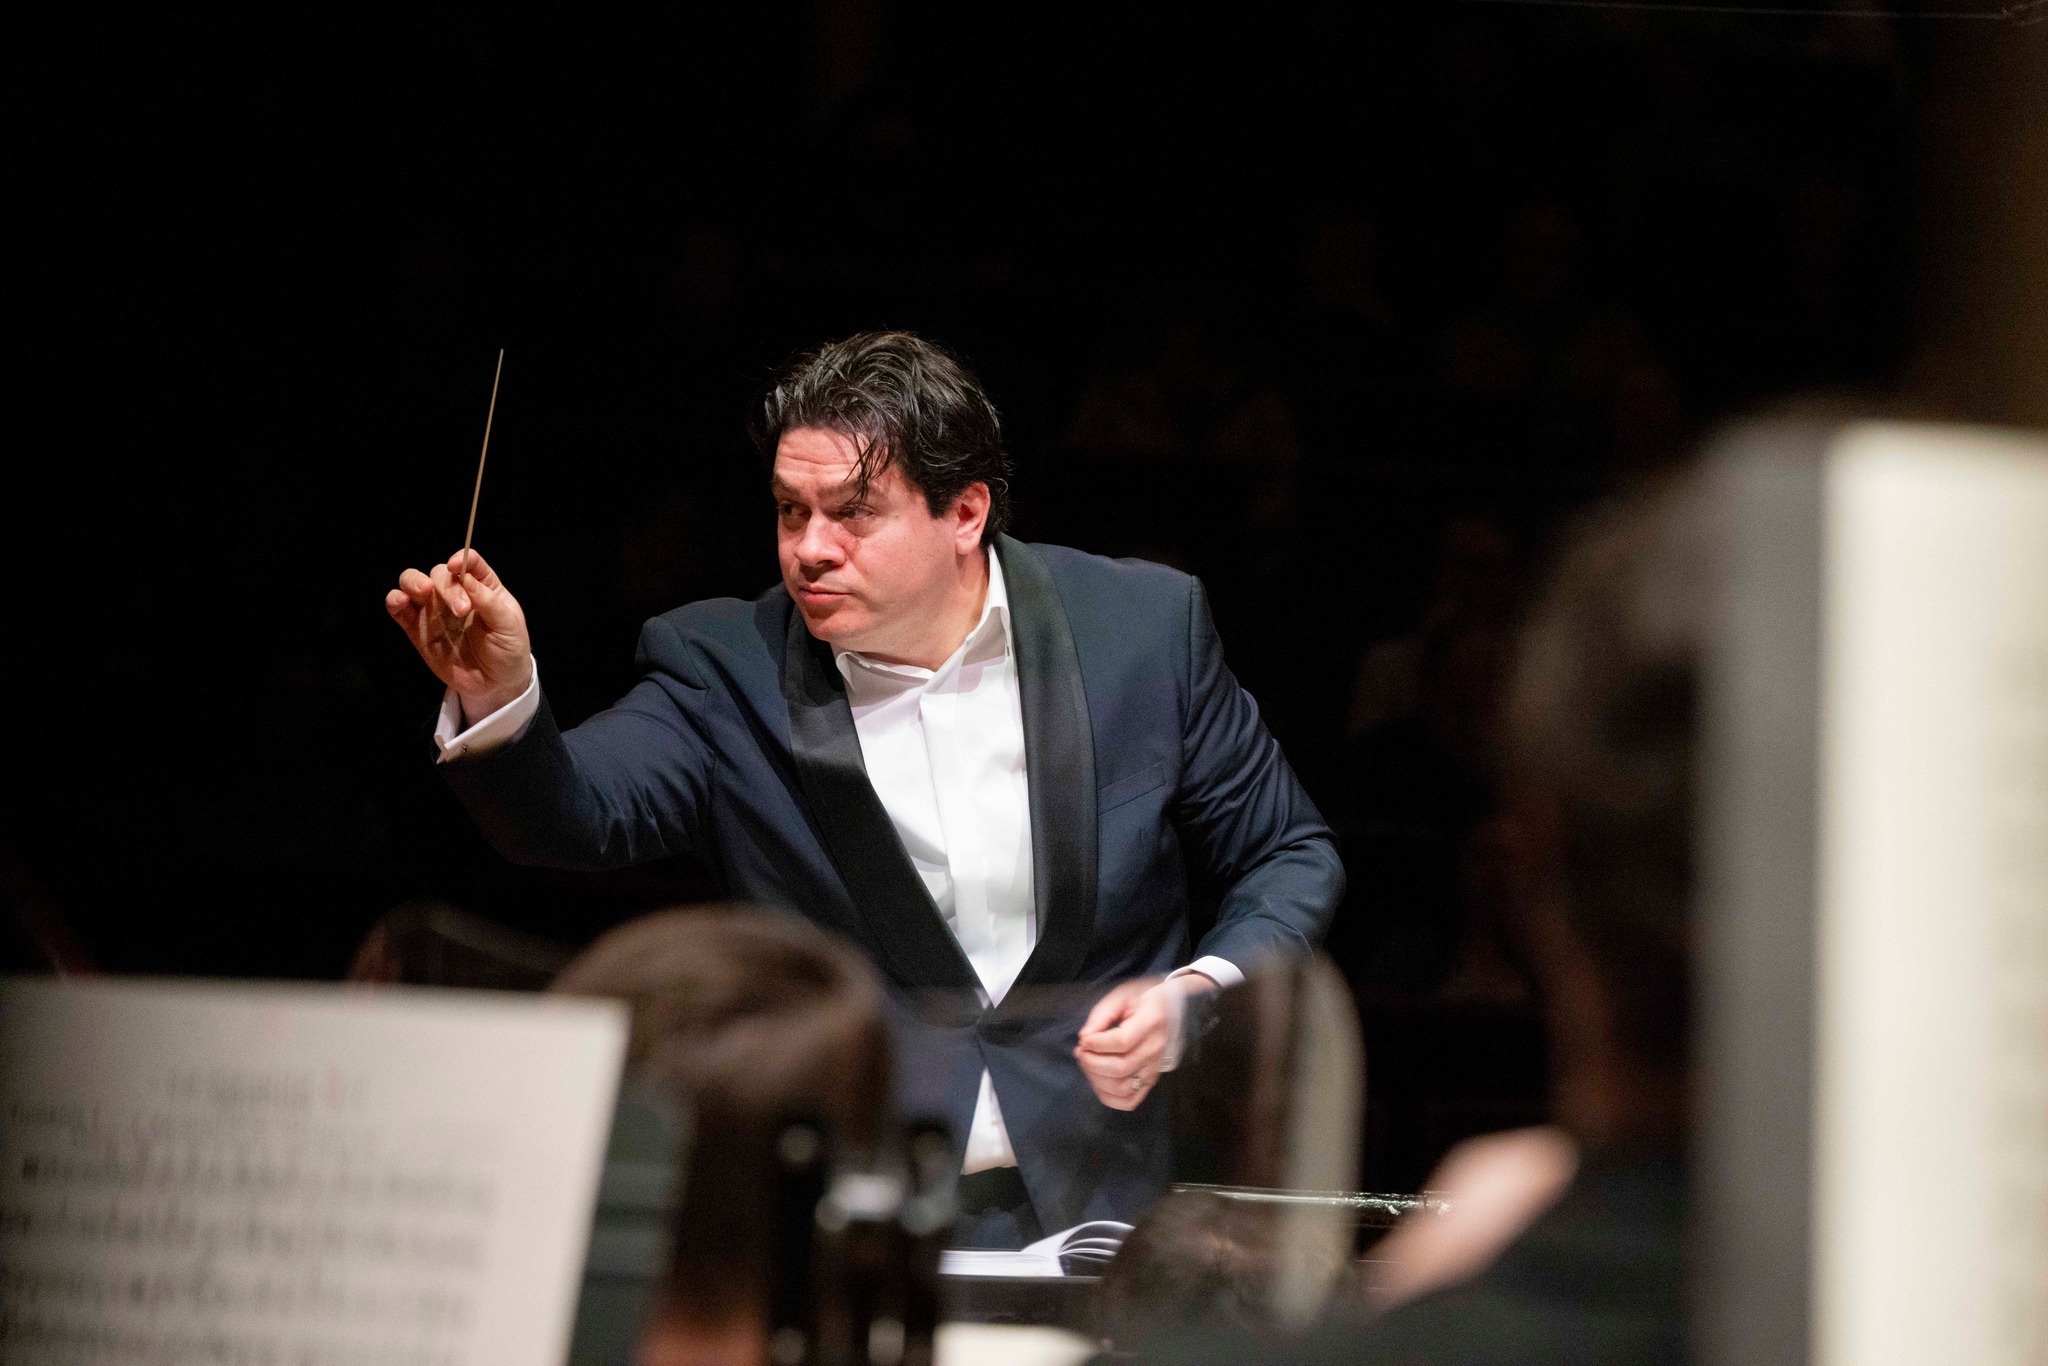 44歲的羅馬尼亞指揮家馬切拉魯將成為辛辛納提交響樂團新音樂總監。Cristian Macelaru臉書